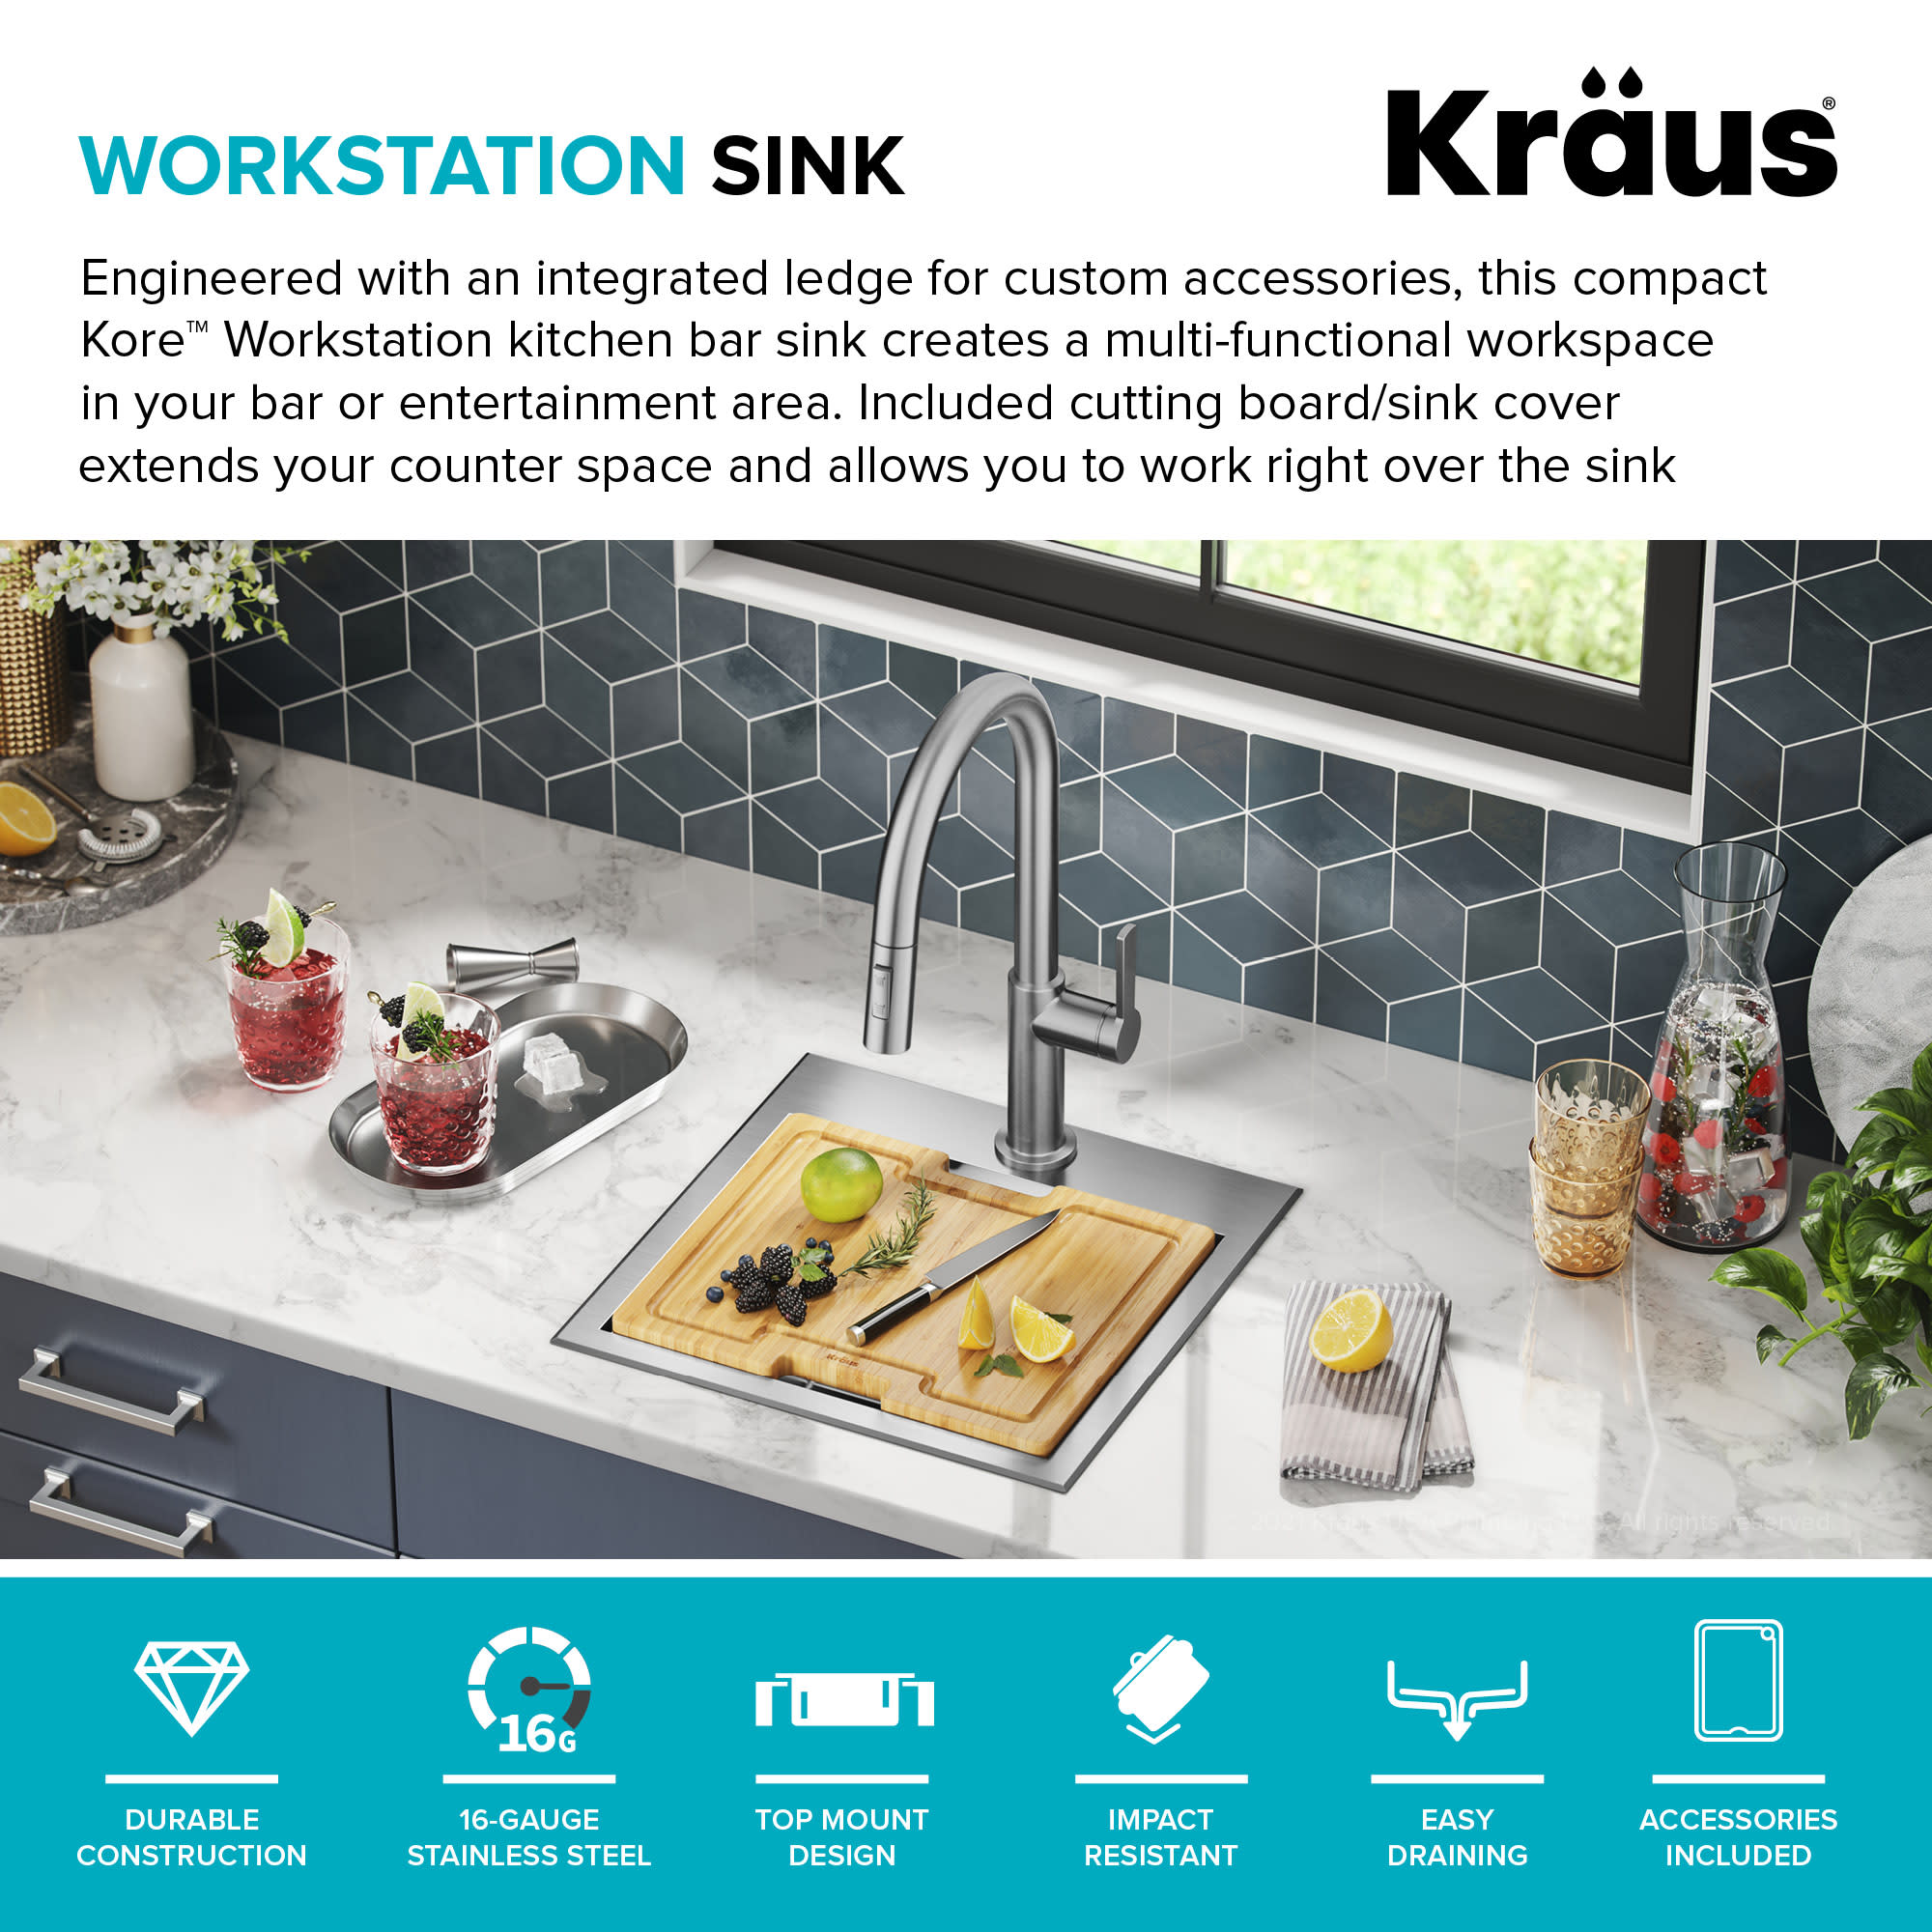 Kraus KWT321-15 15 Workstation Kitchen Bar Sink With Accessories